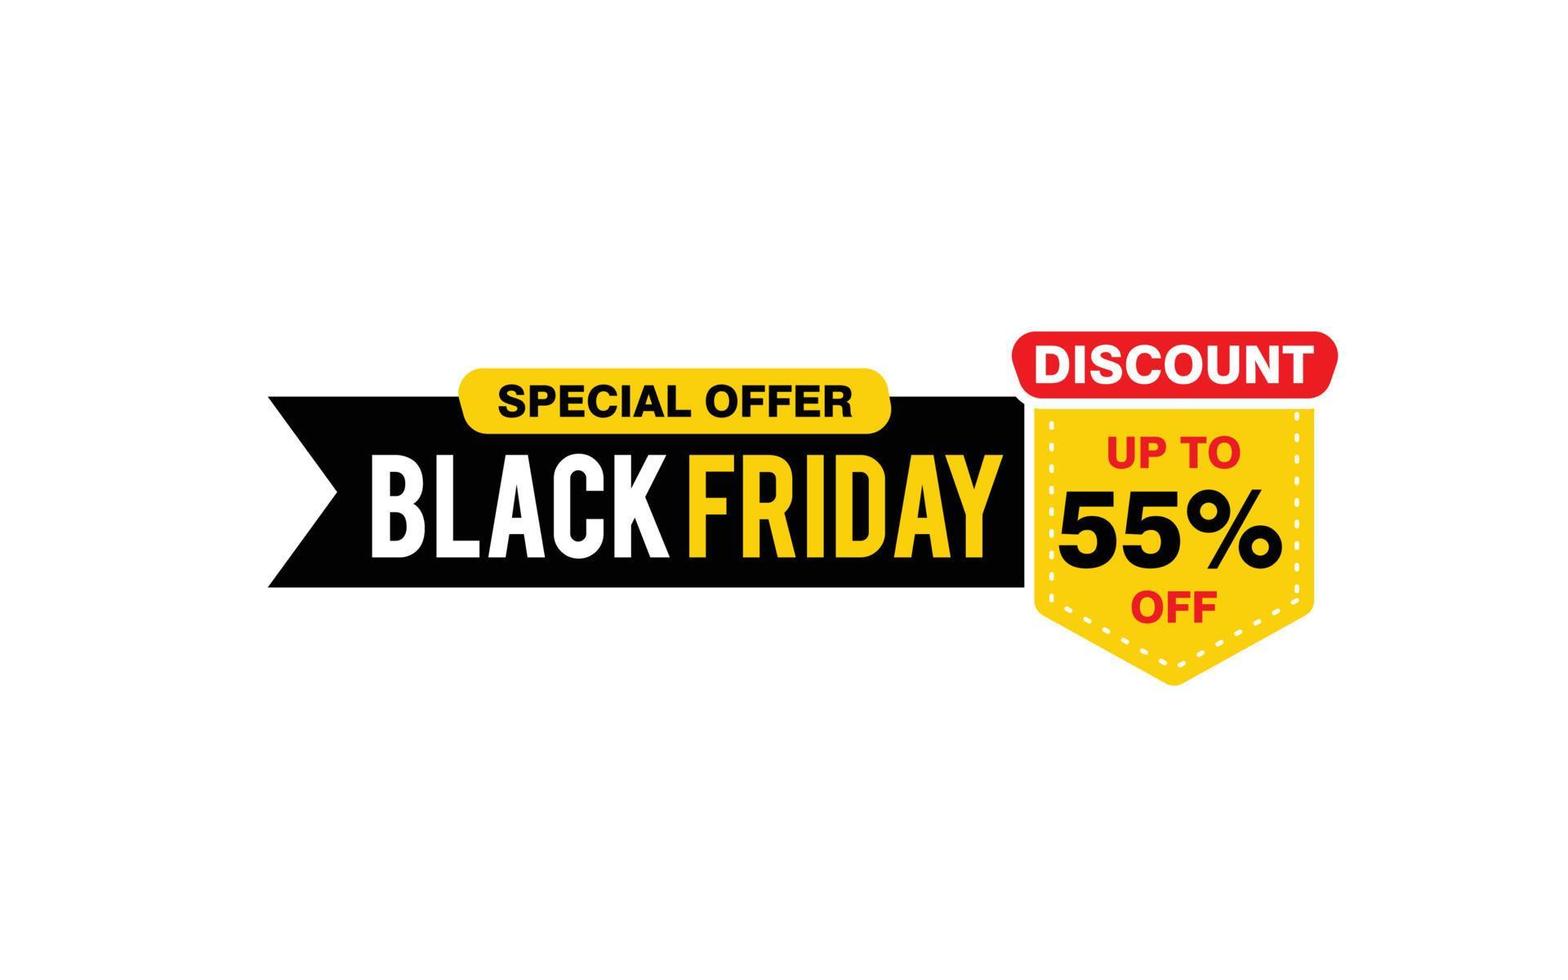 Oferta de sexta-feira negra com desconto de 55%, liberação, layout de banner de promoção com estilo de adesivo. vetor